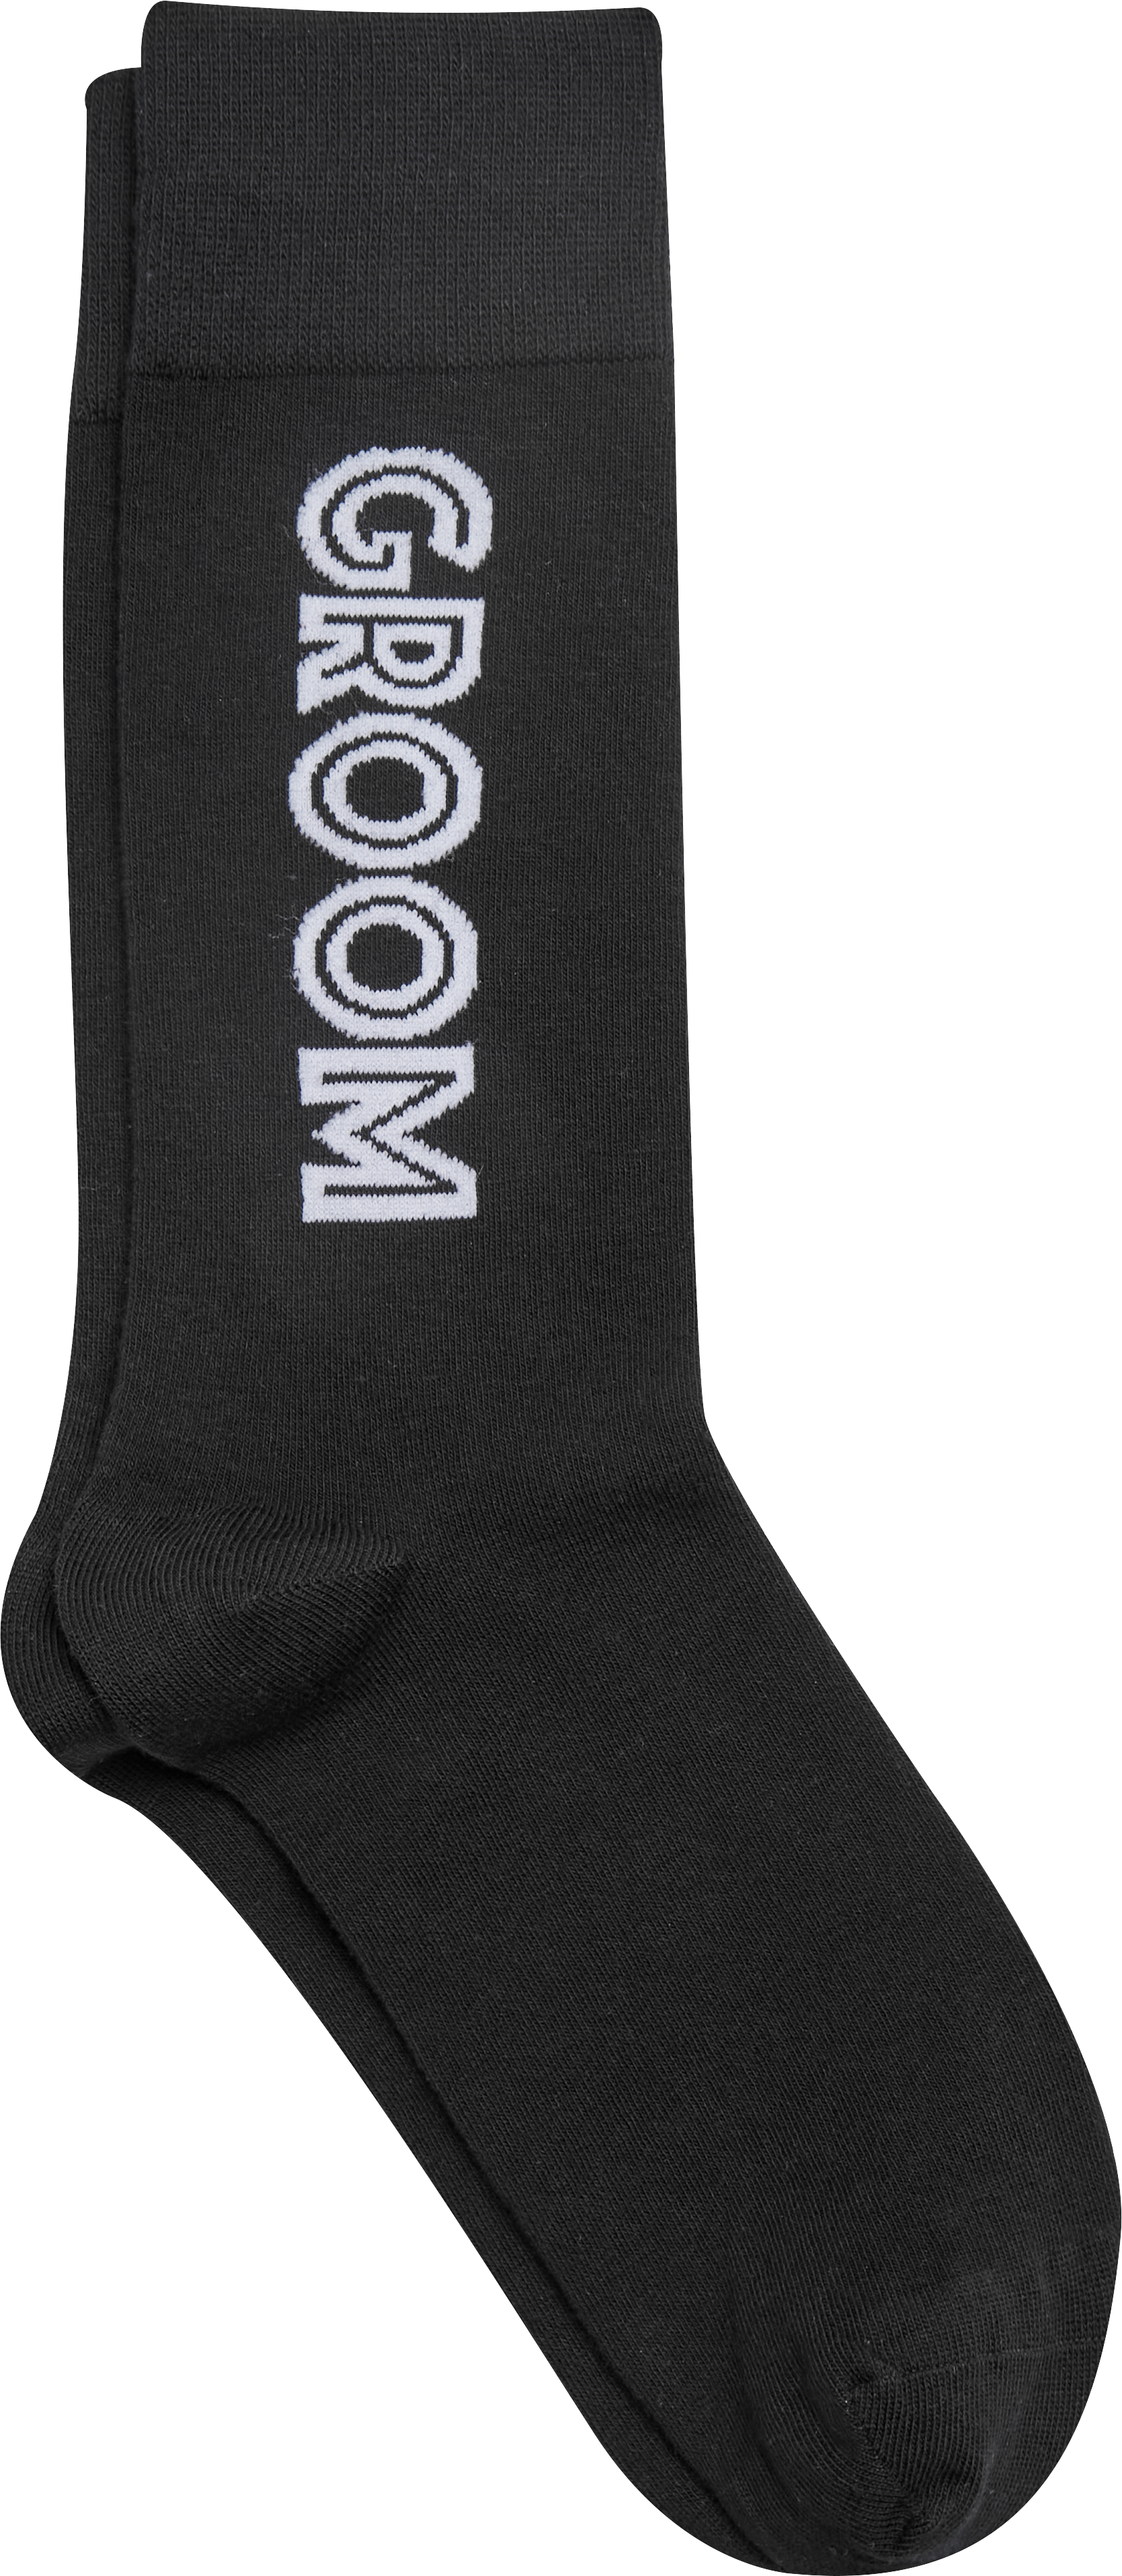 Mid-Calf Groom Socks